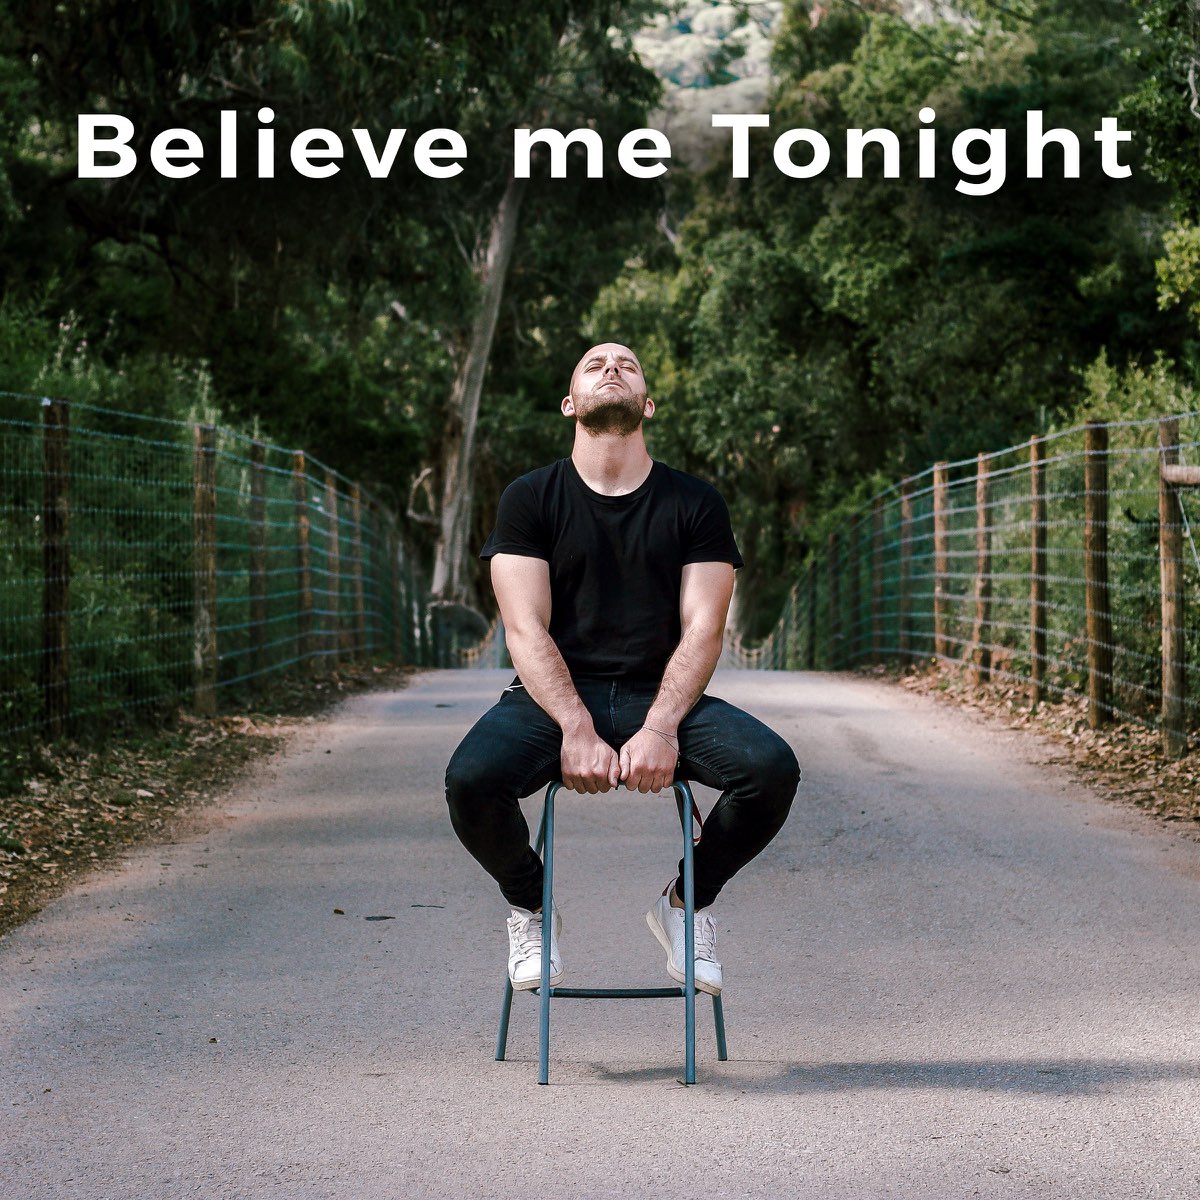 Believe tonight. Believe me Tonight. Believe me Tonight текст. Believe me Tonight перевод. Текст песни believe me Tonight.